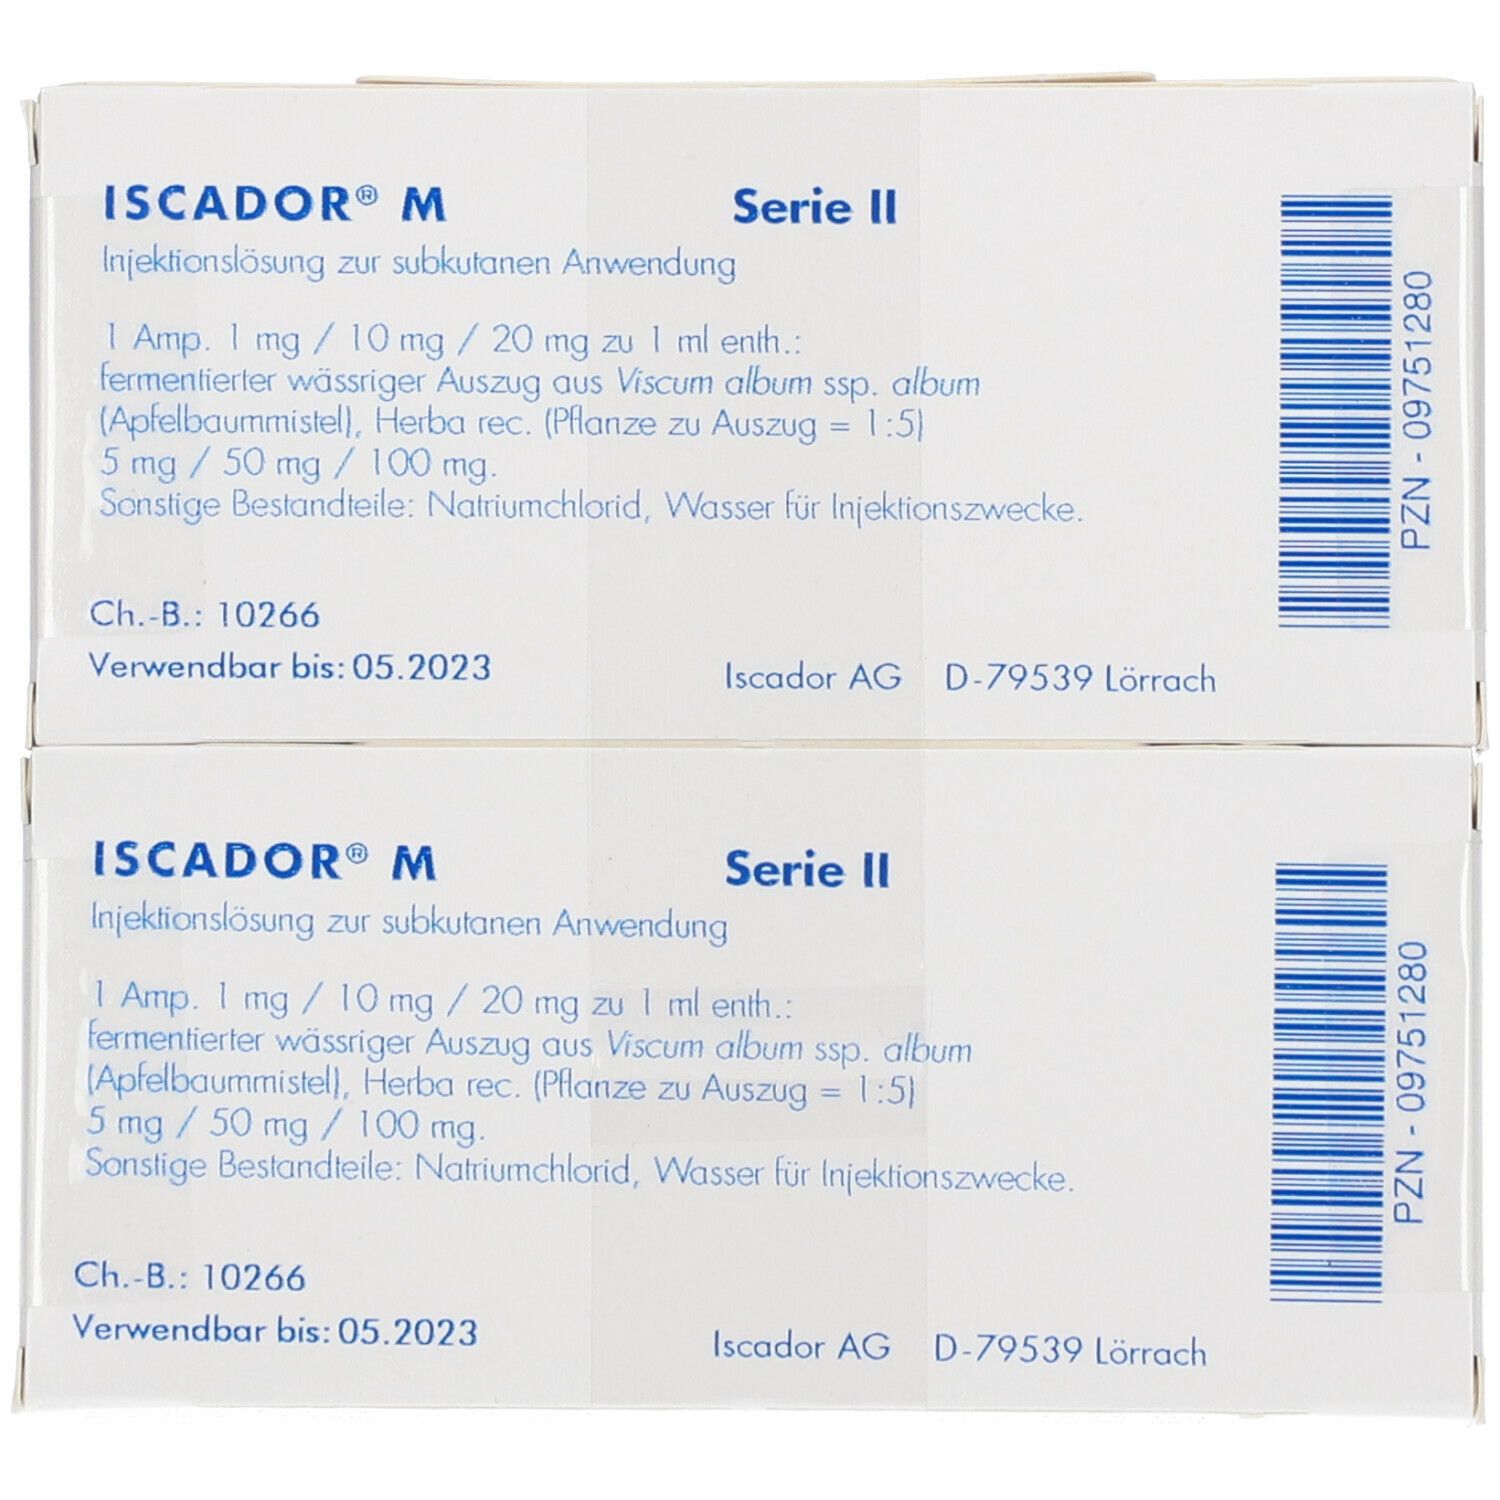 ISCADOR® M Serie II